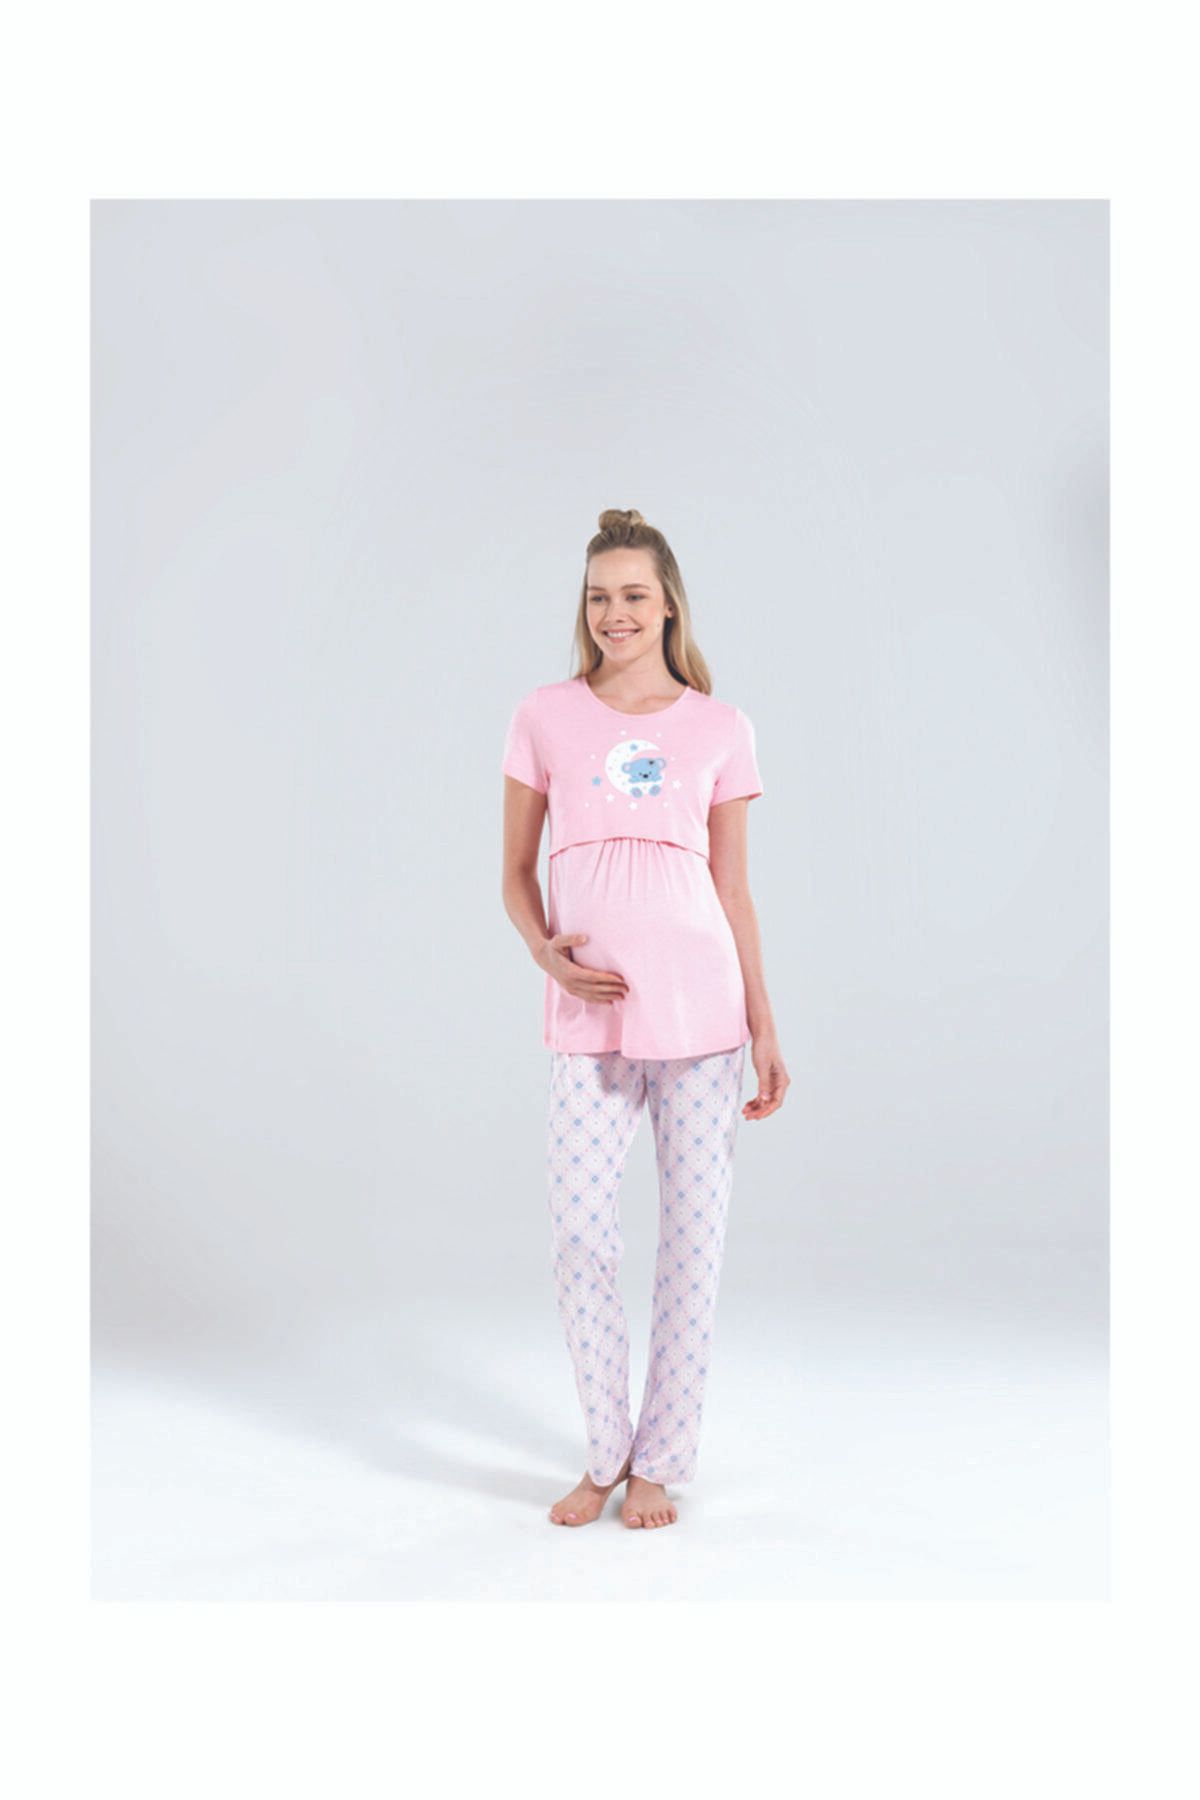 Blackspade Kadın Hamile Pijama Takımı 50209 - Pembe